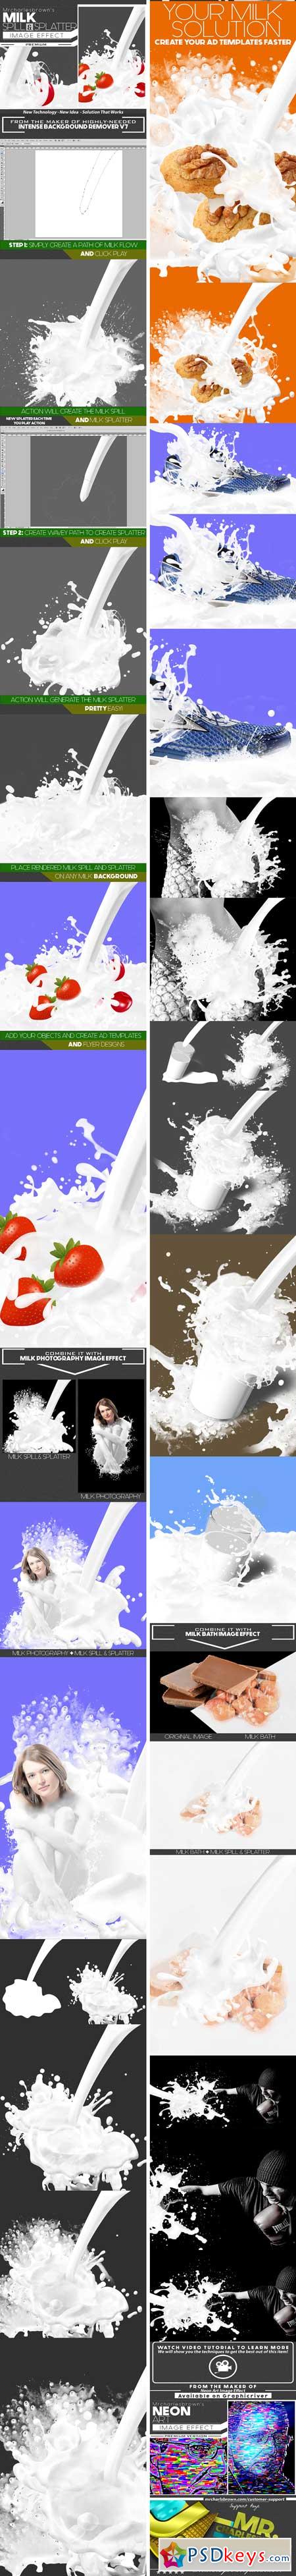 Milk Spill and Splatter Image Effect 20143294